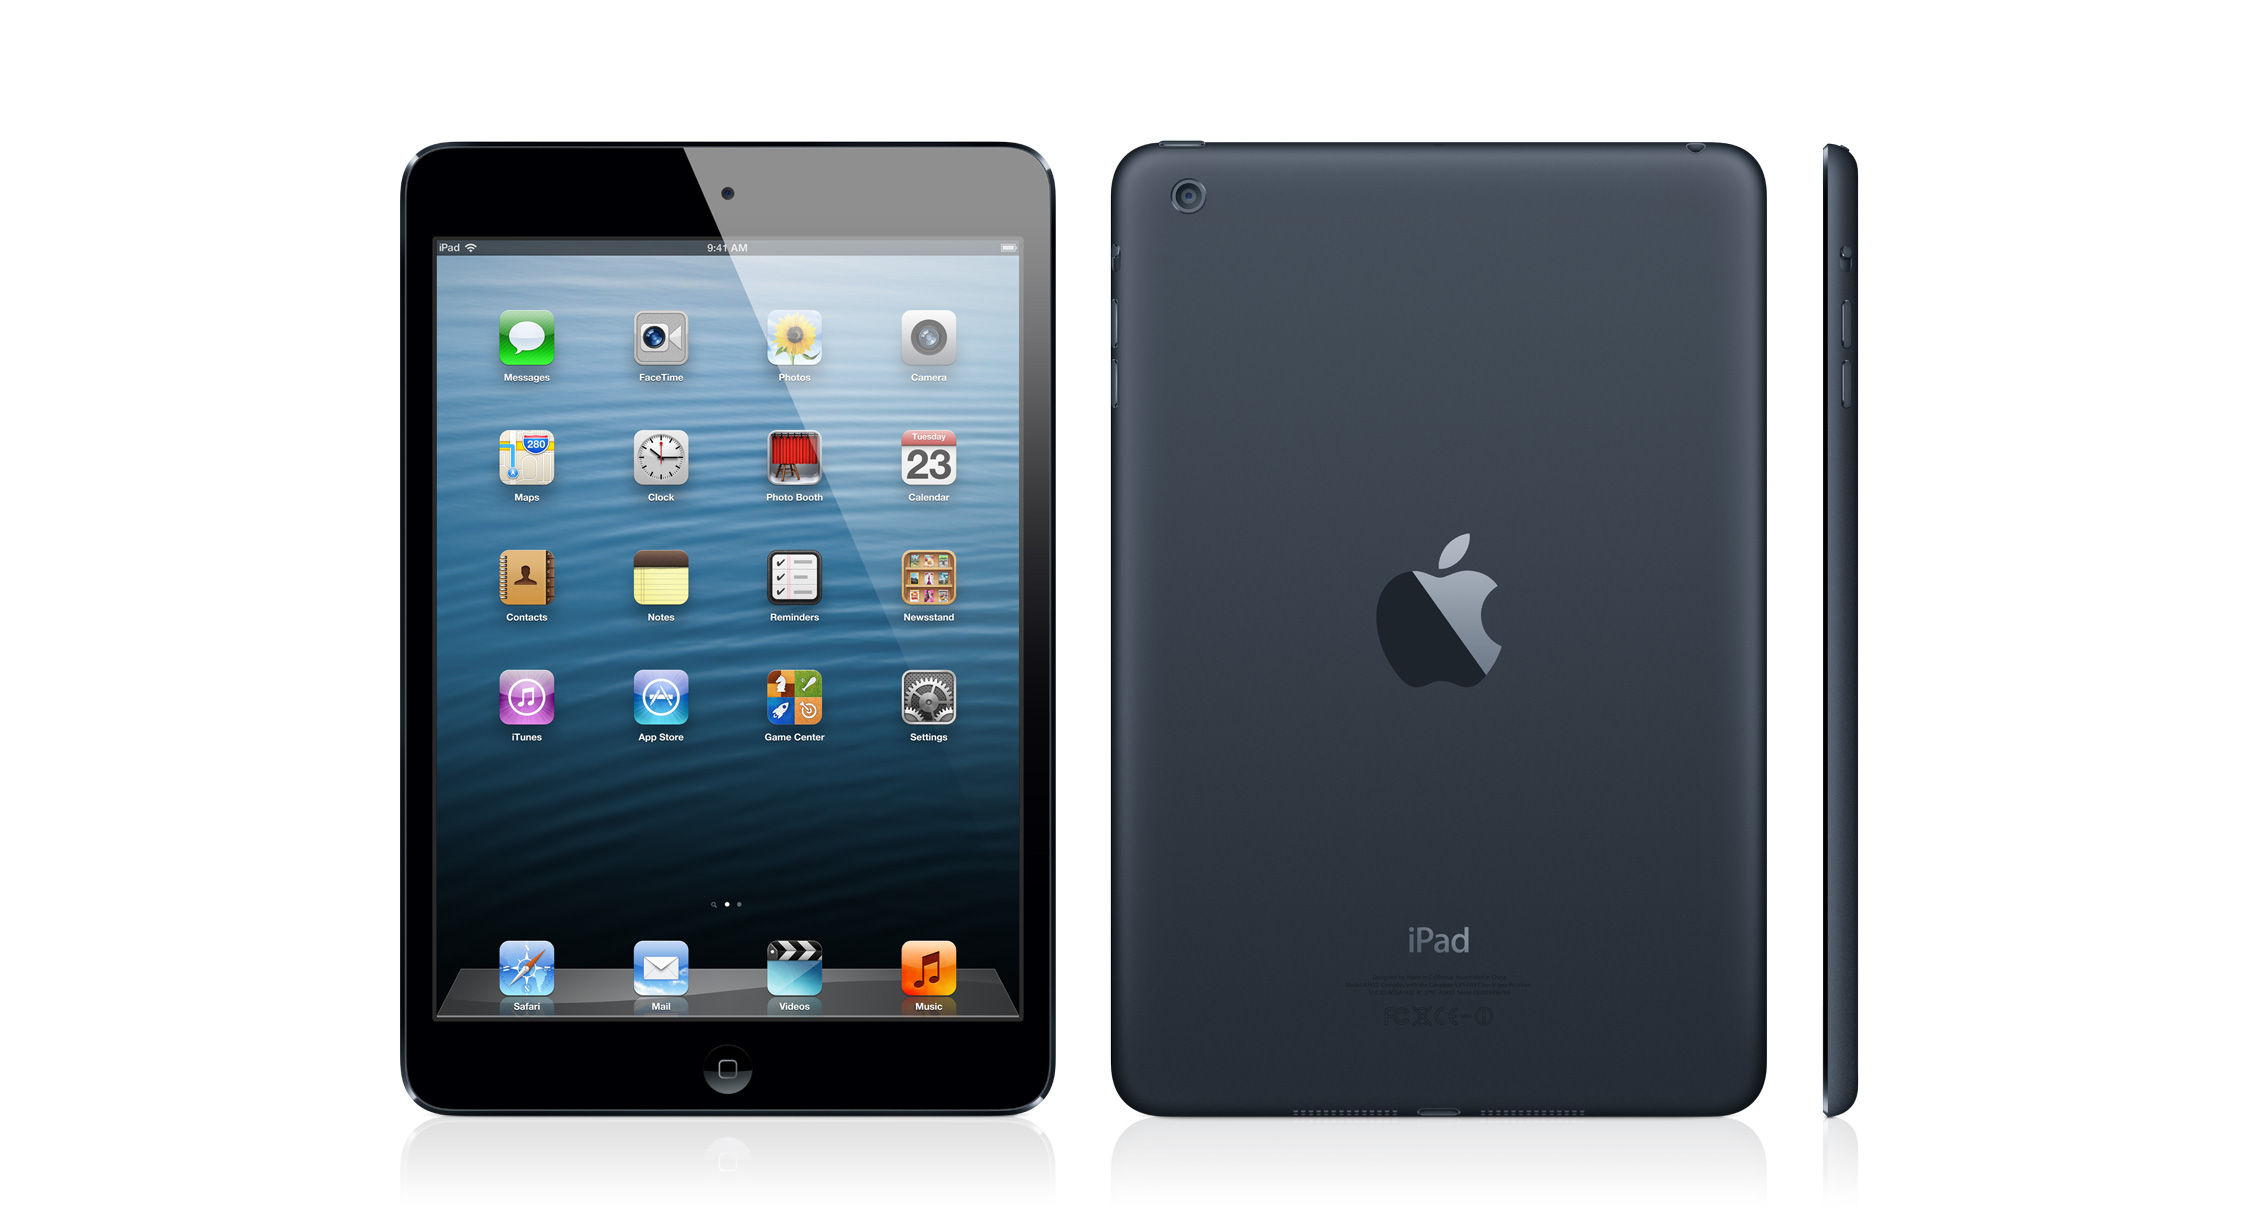 bán nhanh iPad mini 16gb like new fullbox bh chính hãng hơn 11 tháng giá bèo nhèo - 2